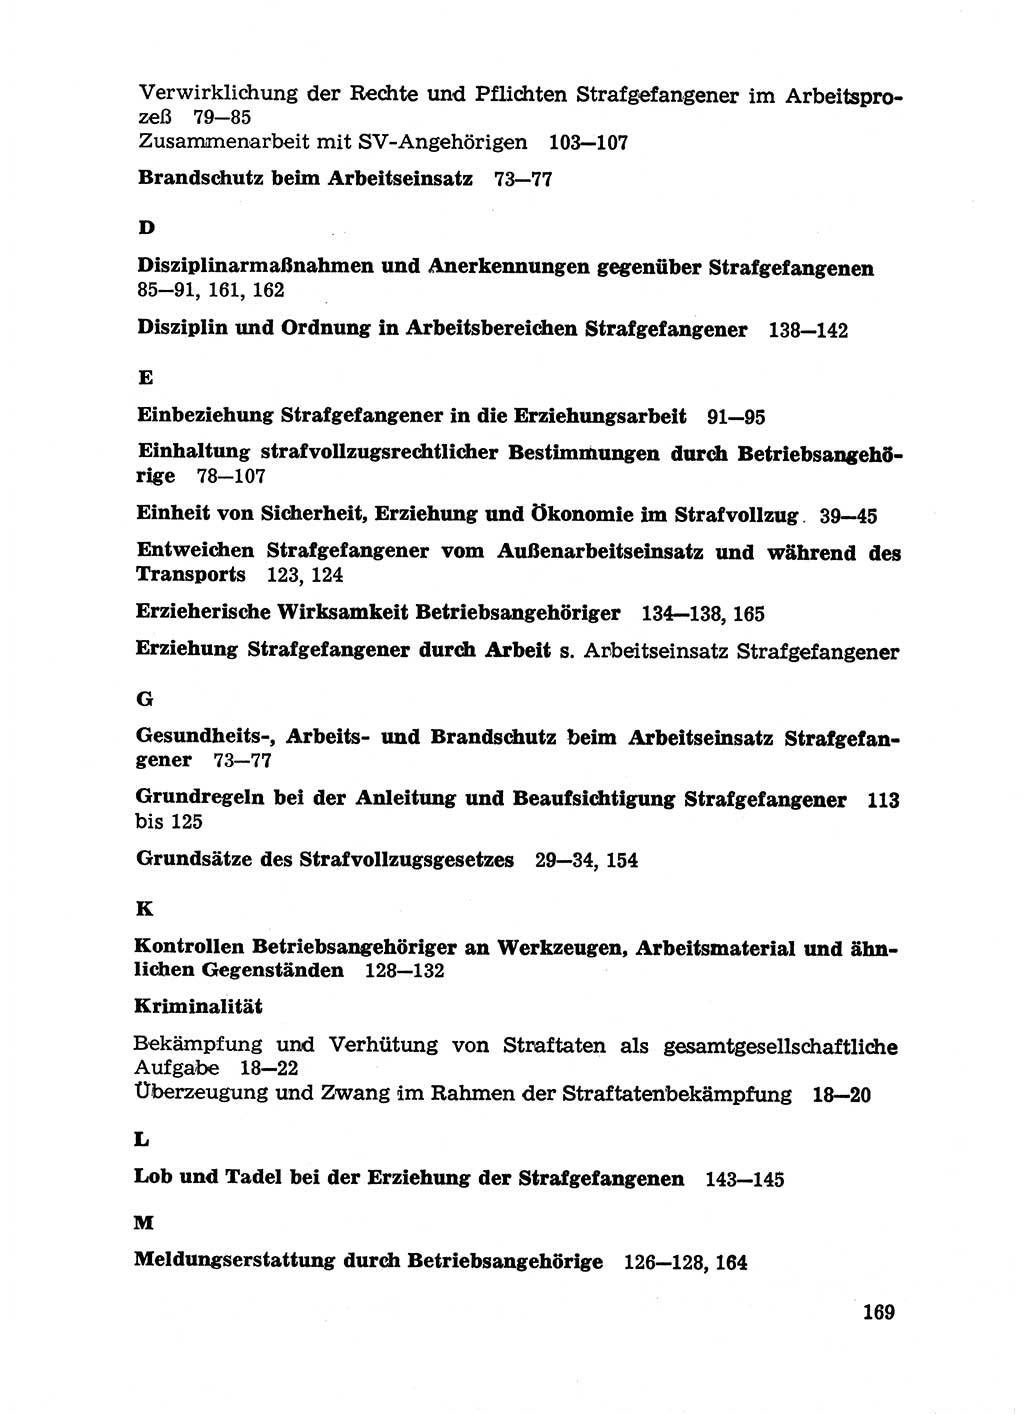 Handbuch für Betriebsangehörige, Abteilung Strafvollzug (SV) [Ministerium des Innern (MdI) Deutsche Demokratische Republik (DDR)] 1981, Seite 169 (Hb. BA Abt. SV MdI DDR 1981, S. 169)